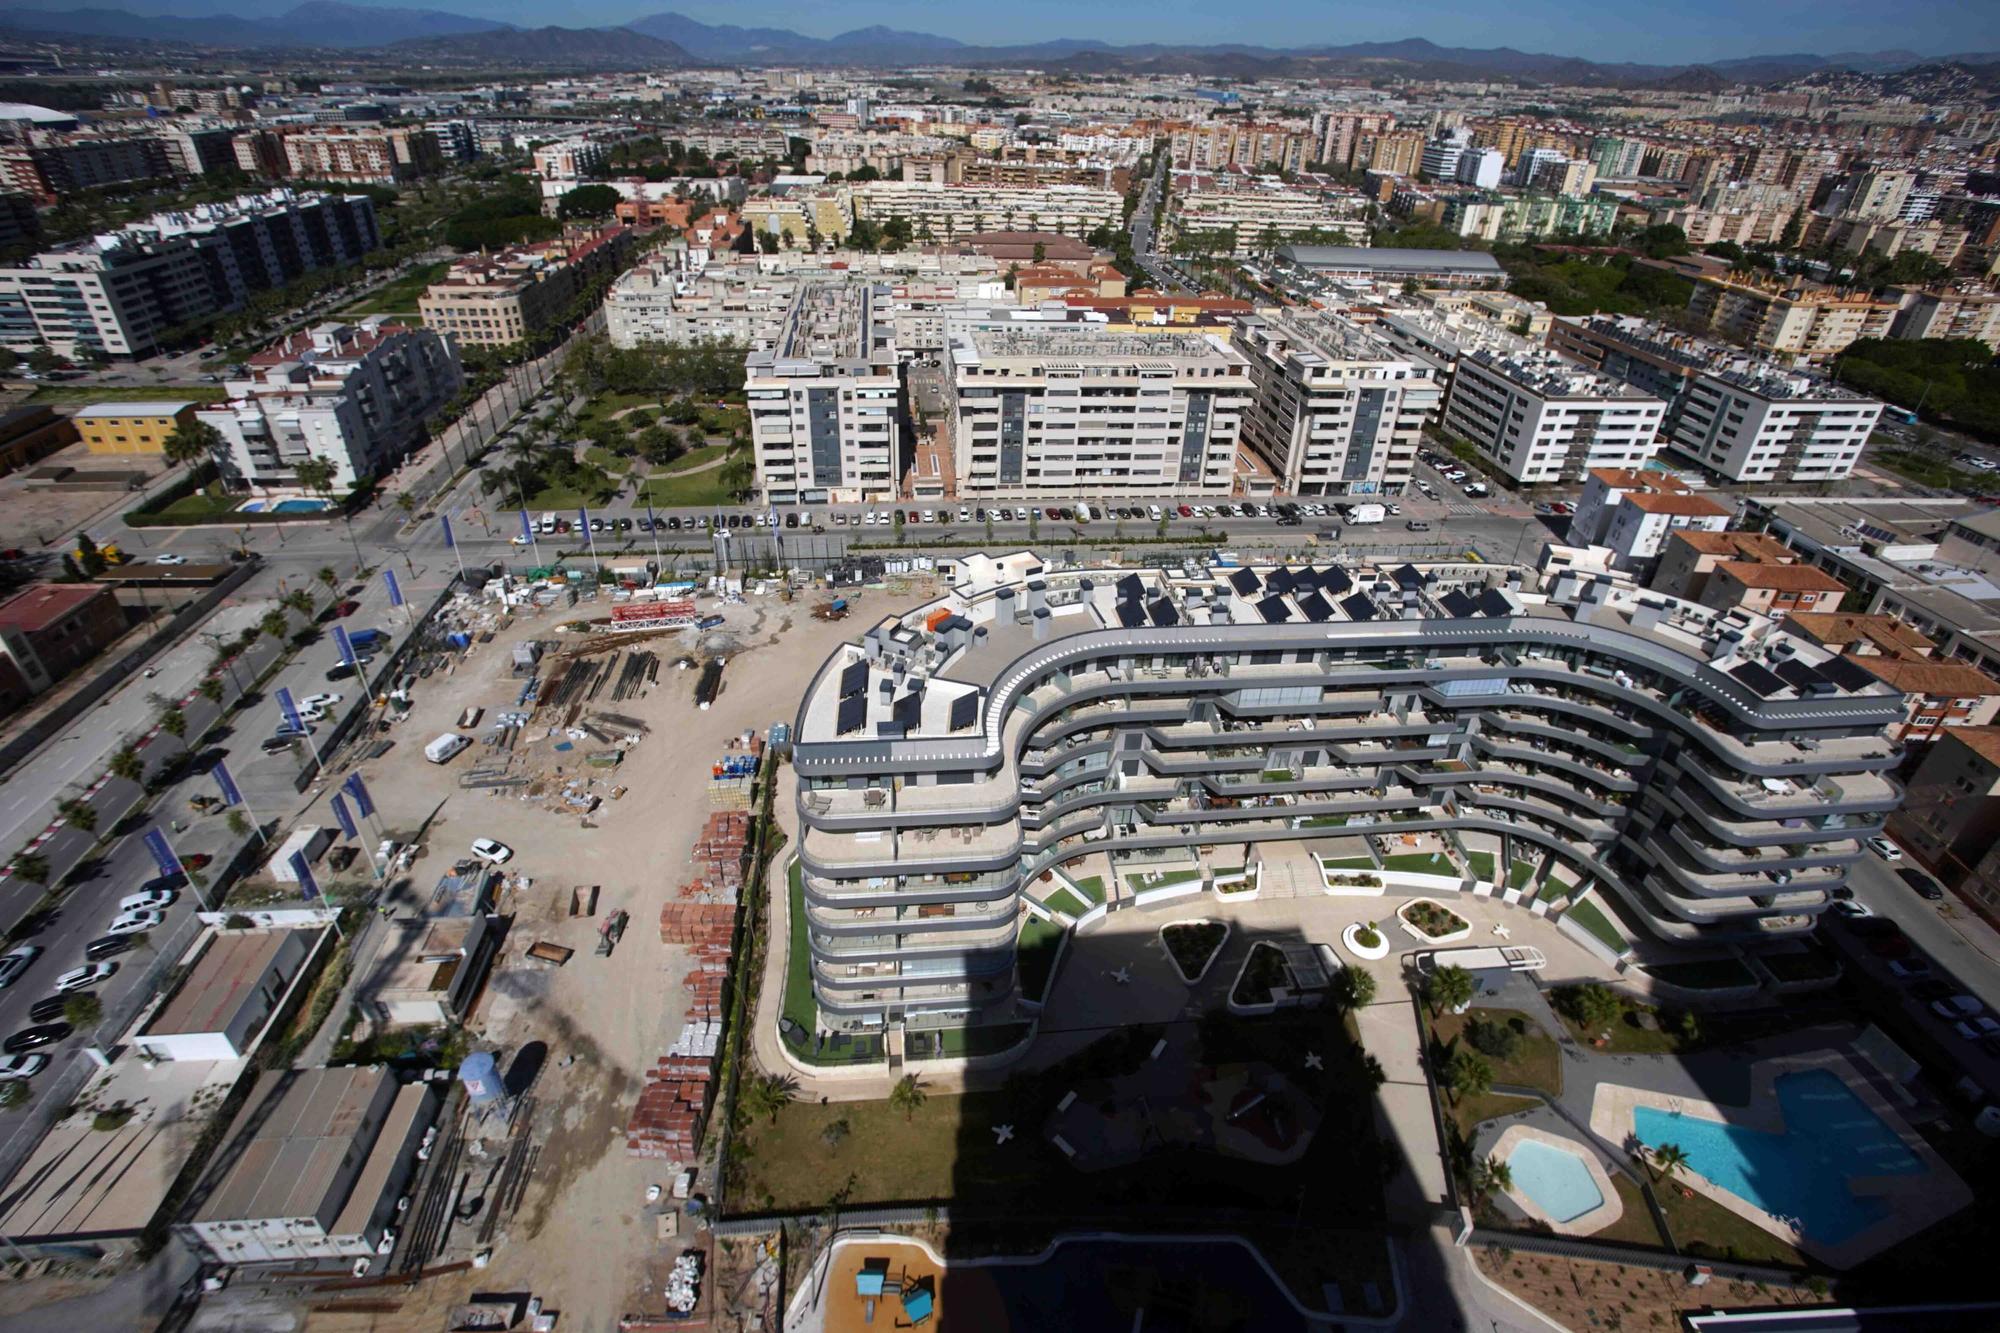 Vista aérea de la zona oeste de Málaga: Sacaba, playa de la Misericordia y terrenos de La Térmica.